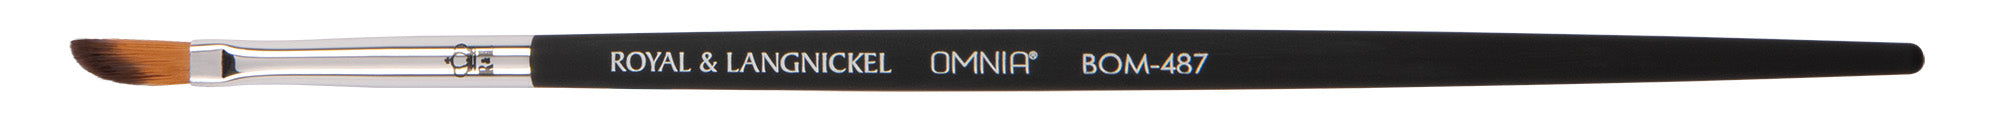 OMNIA® Professional BOM-487